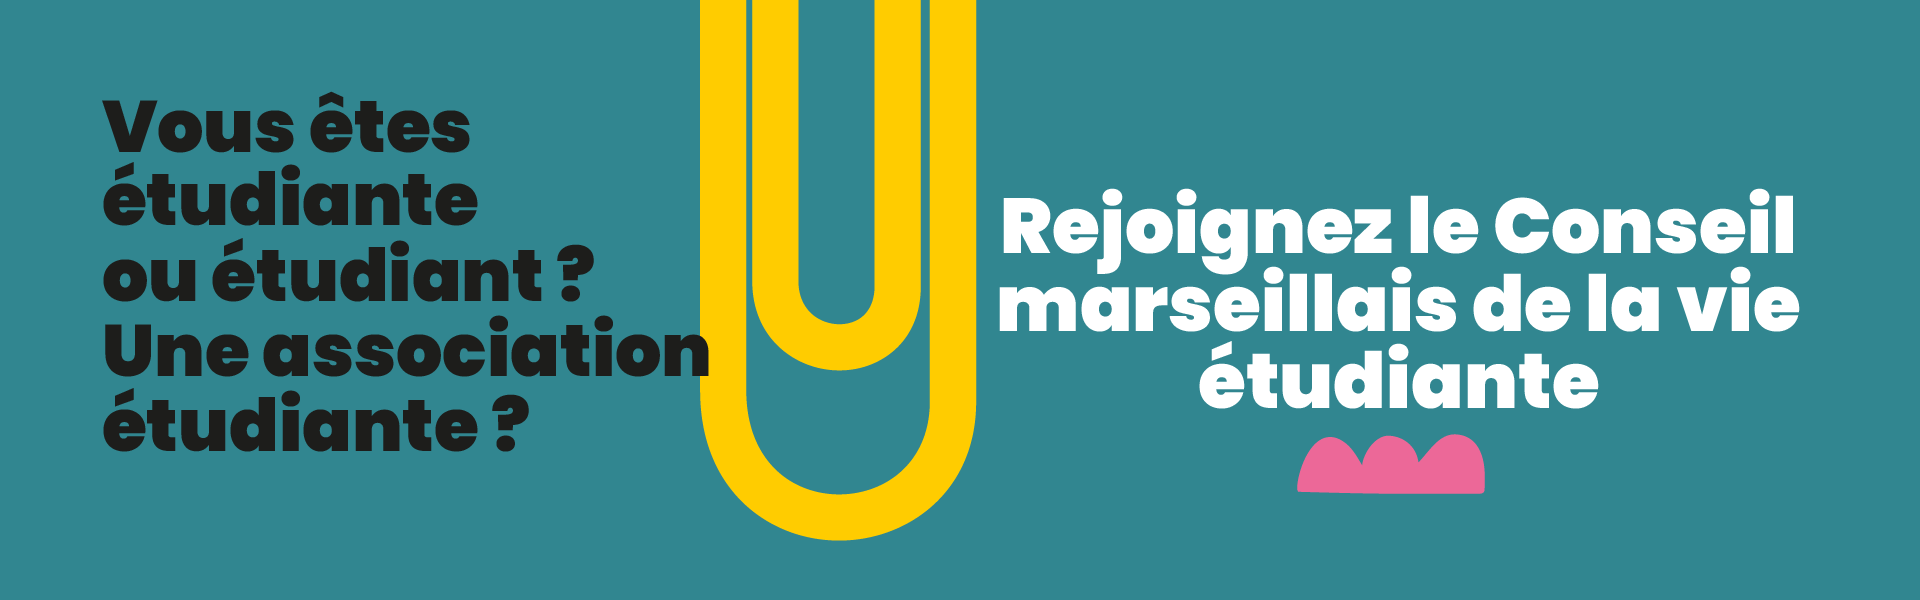 Rejoignez le Conseil marseillais de la vie étudiante, la Ville de Marseille vous donne la parole !